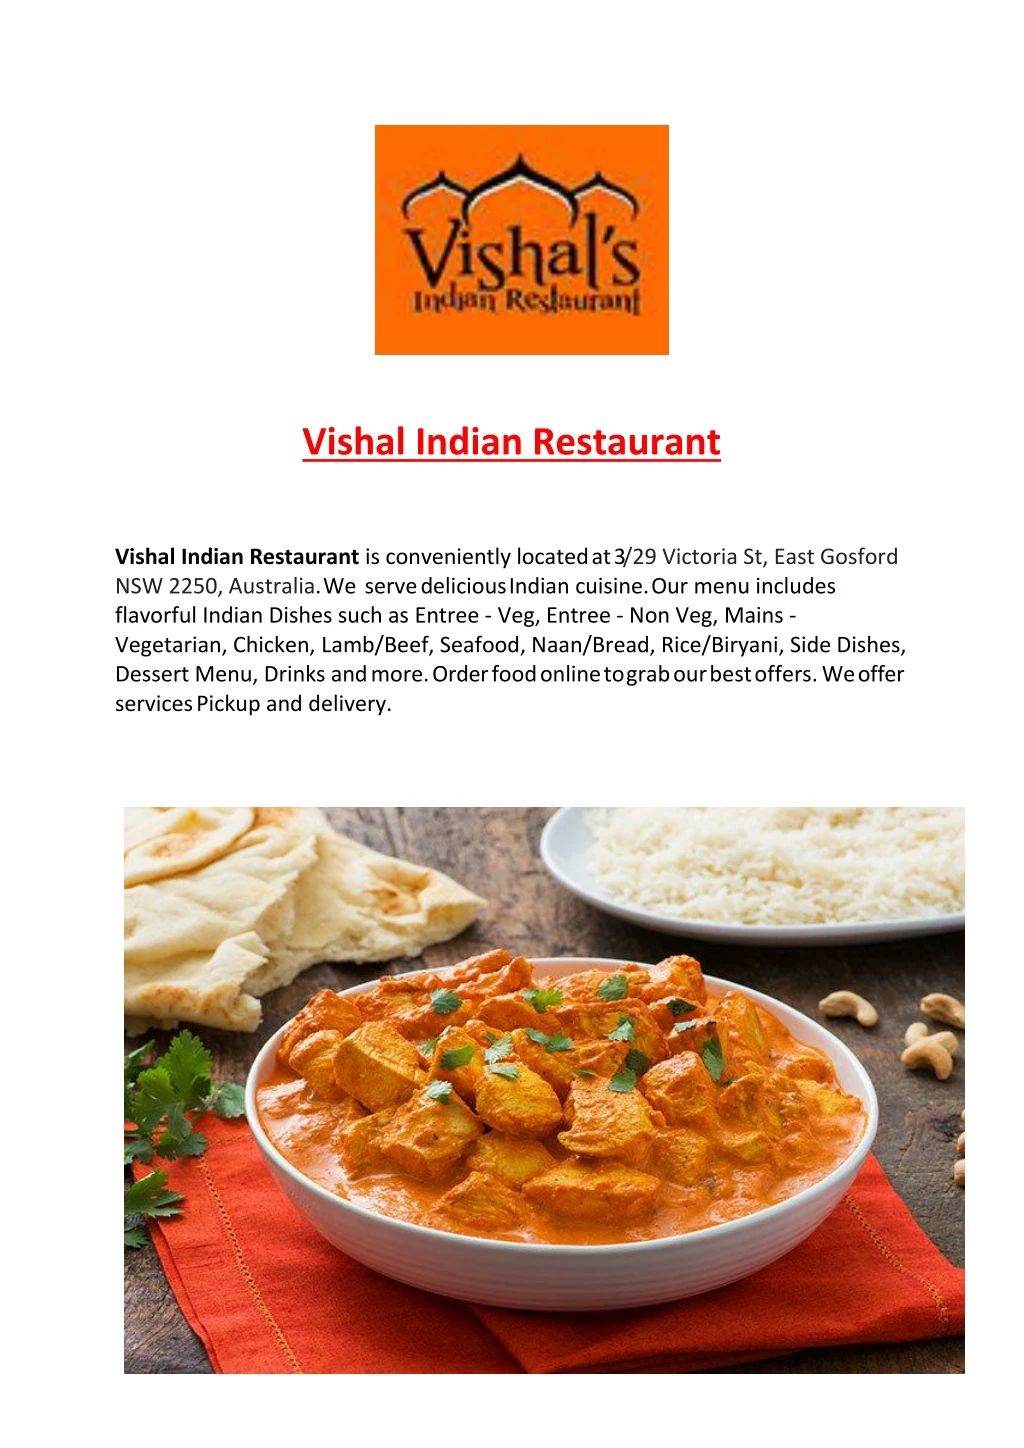 vishal indian restaurant vishal indian restaurant